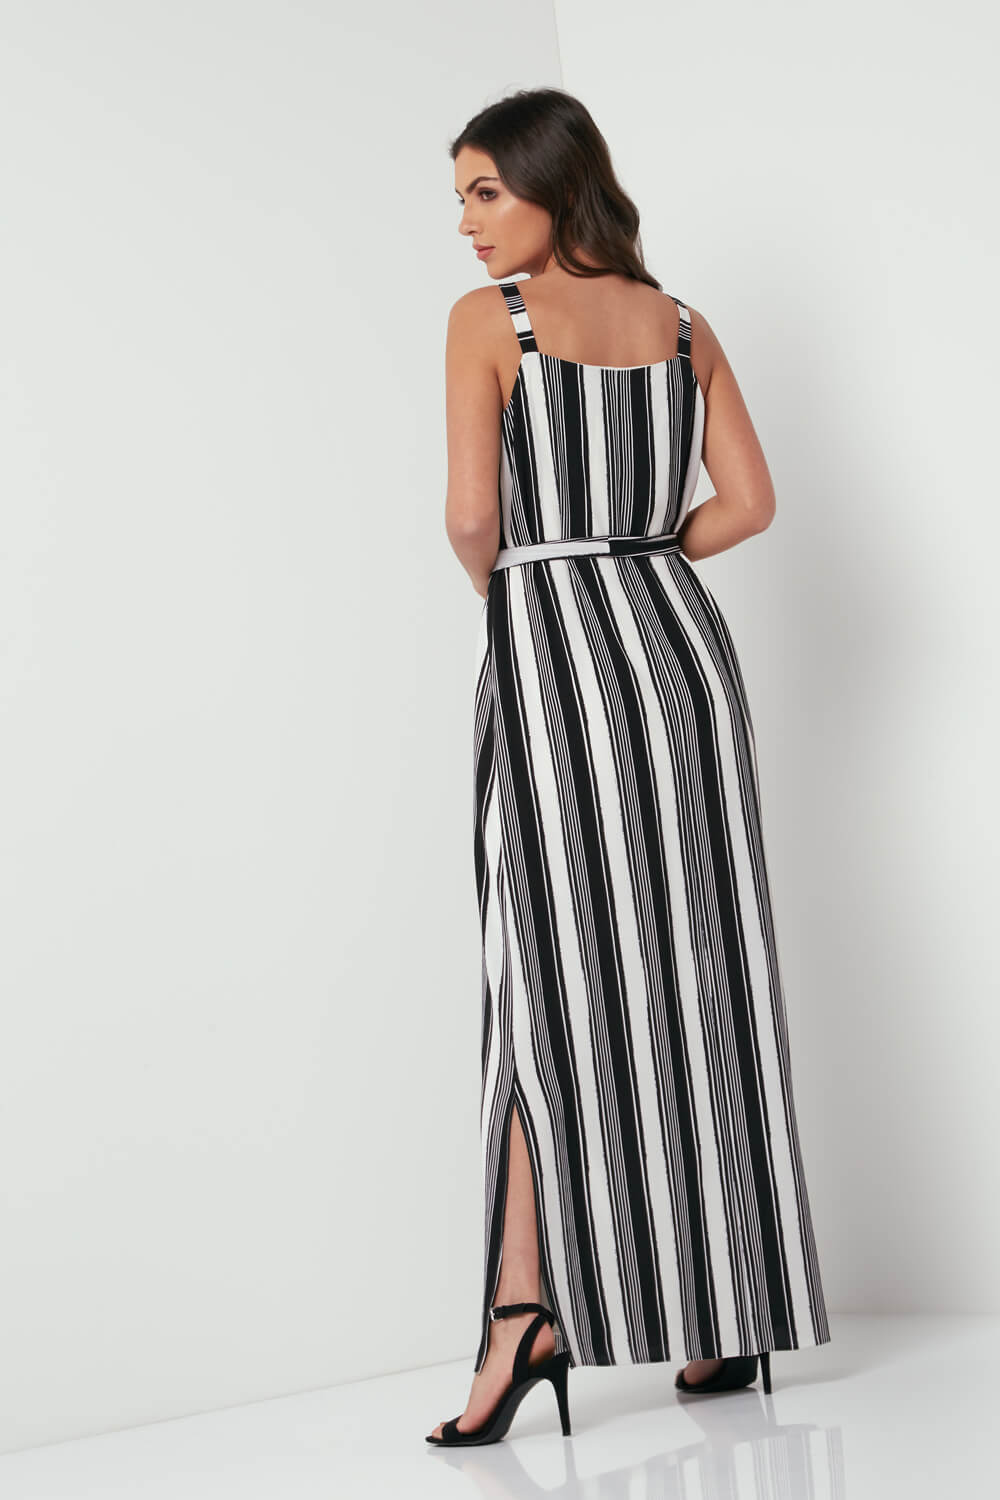 Monochrome Stripe Maxi Dress in White - Roman Originals UK